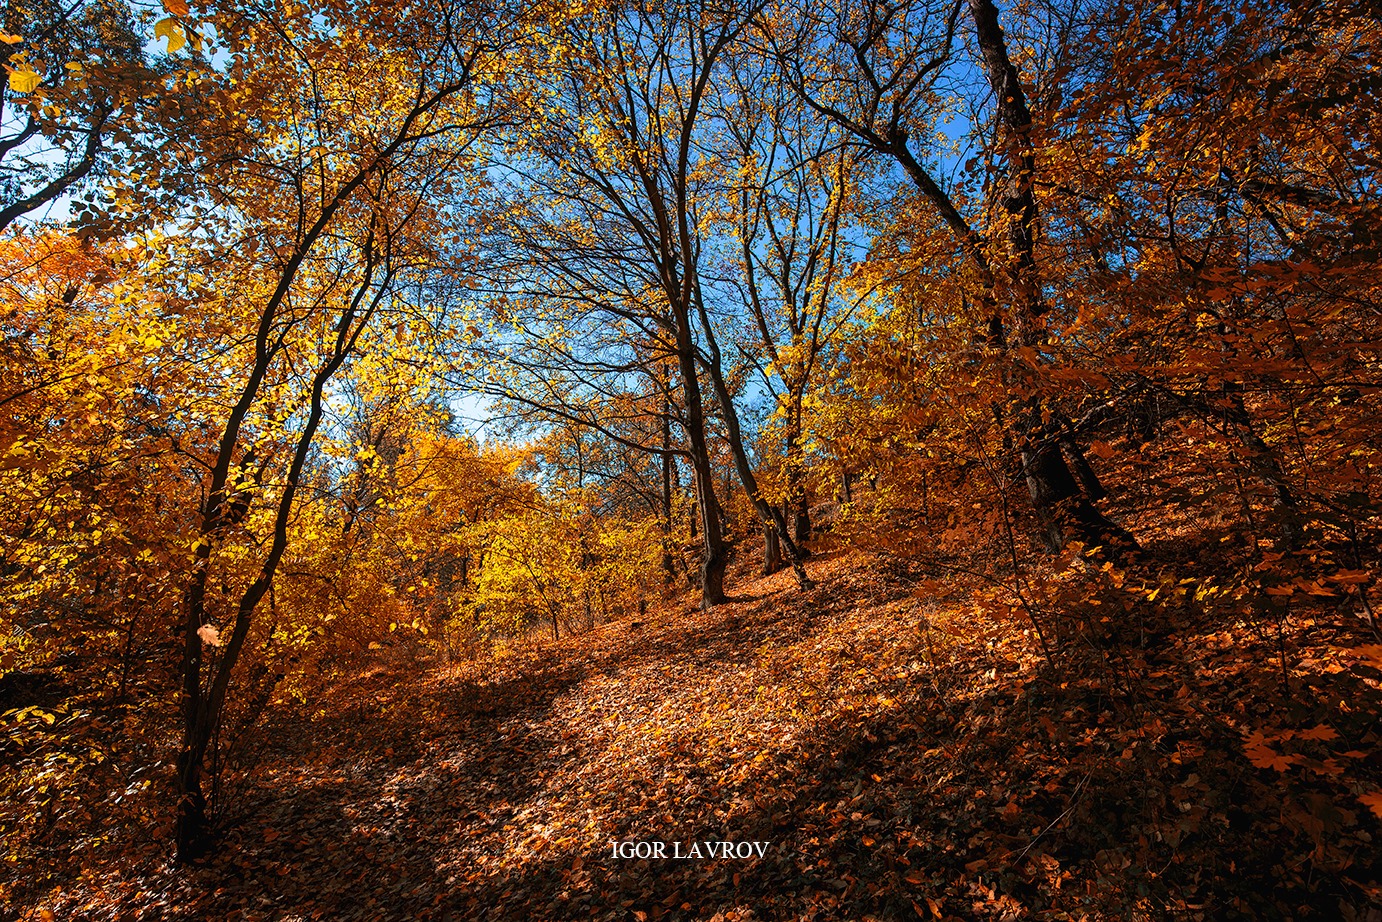 Запорожский фотограф показал всю прелесть осени в красочных фото (ФОТО)